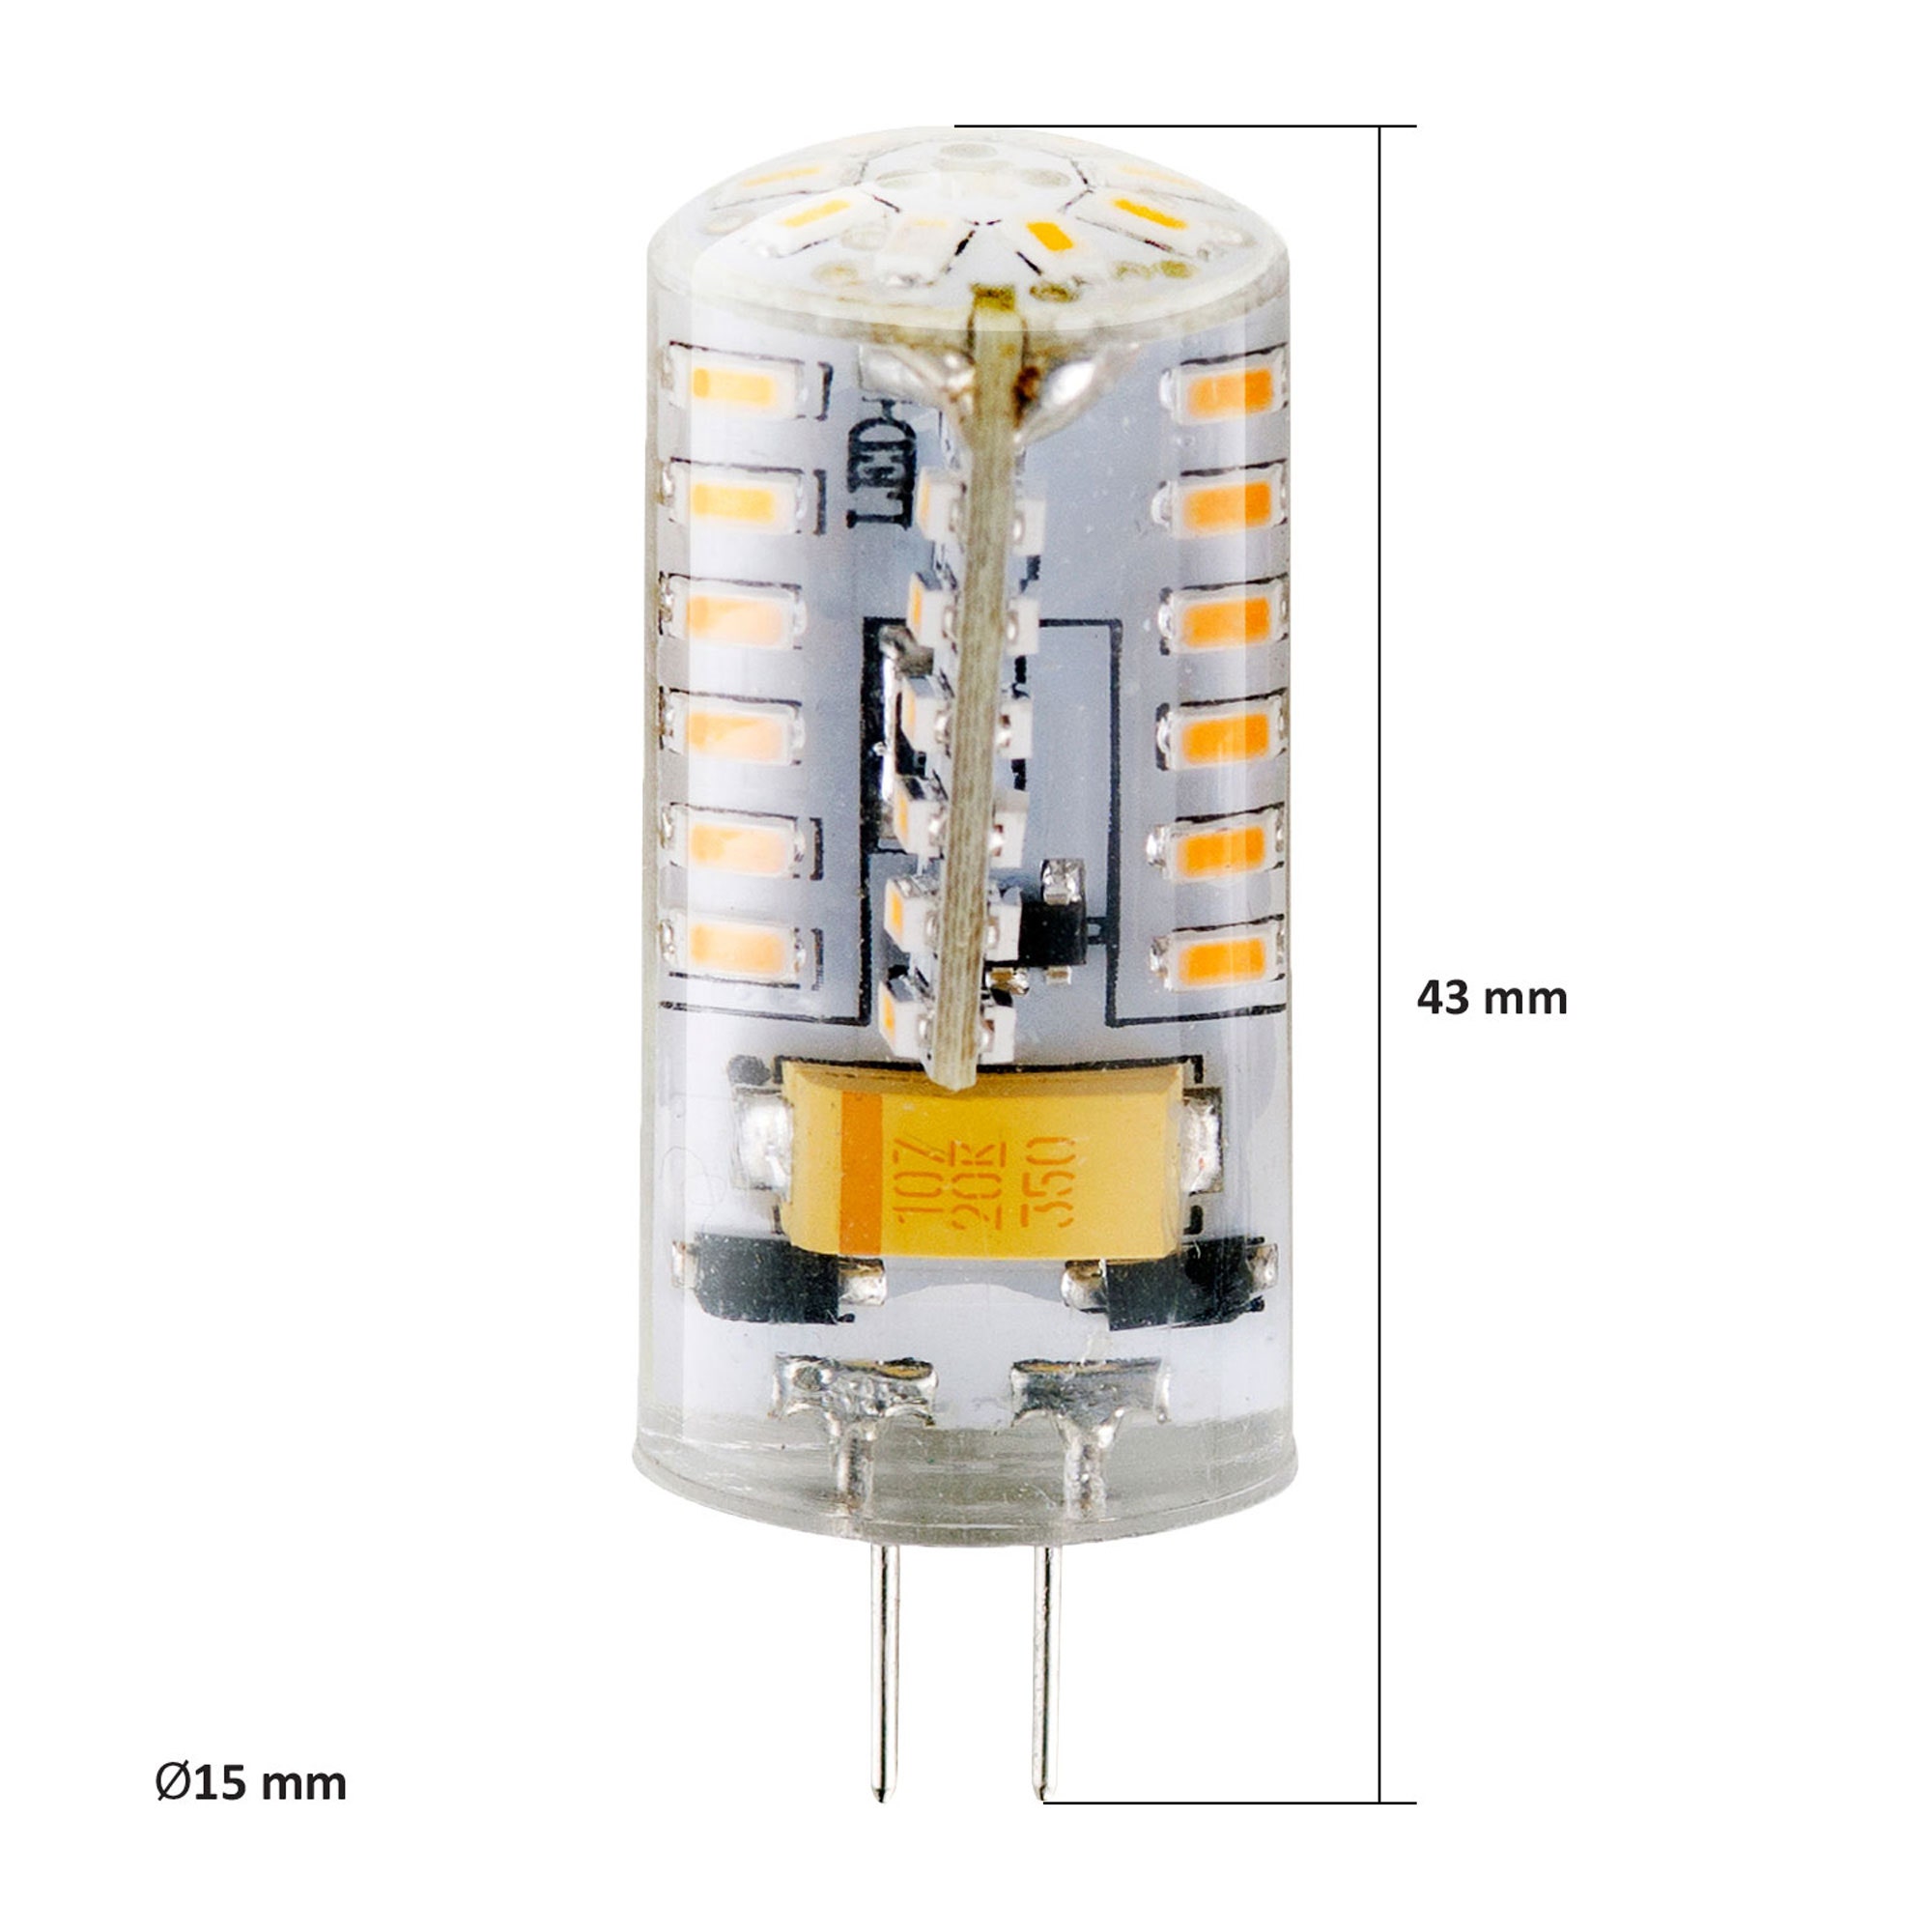 Bec LED Lohuis mini G4 3W 220lm lumina rece 6500 K, 12V